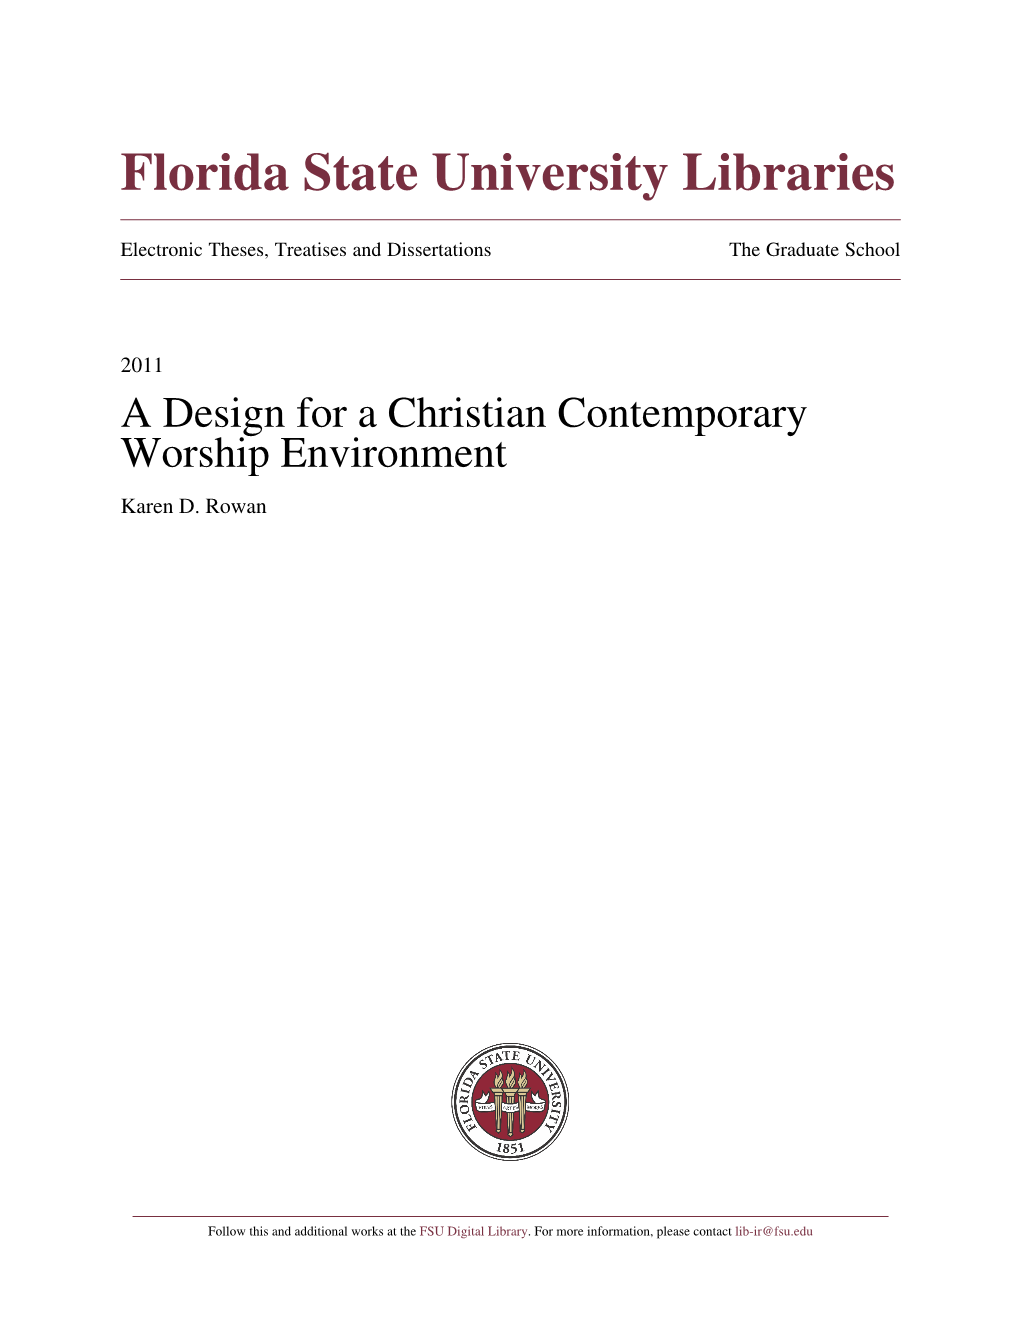 A Design for a Christian Contemporary Worship Environment Karen D